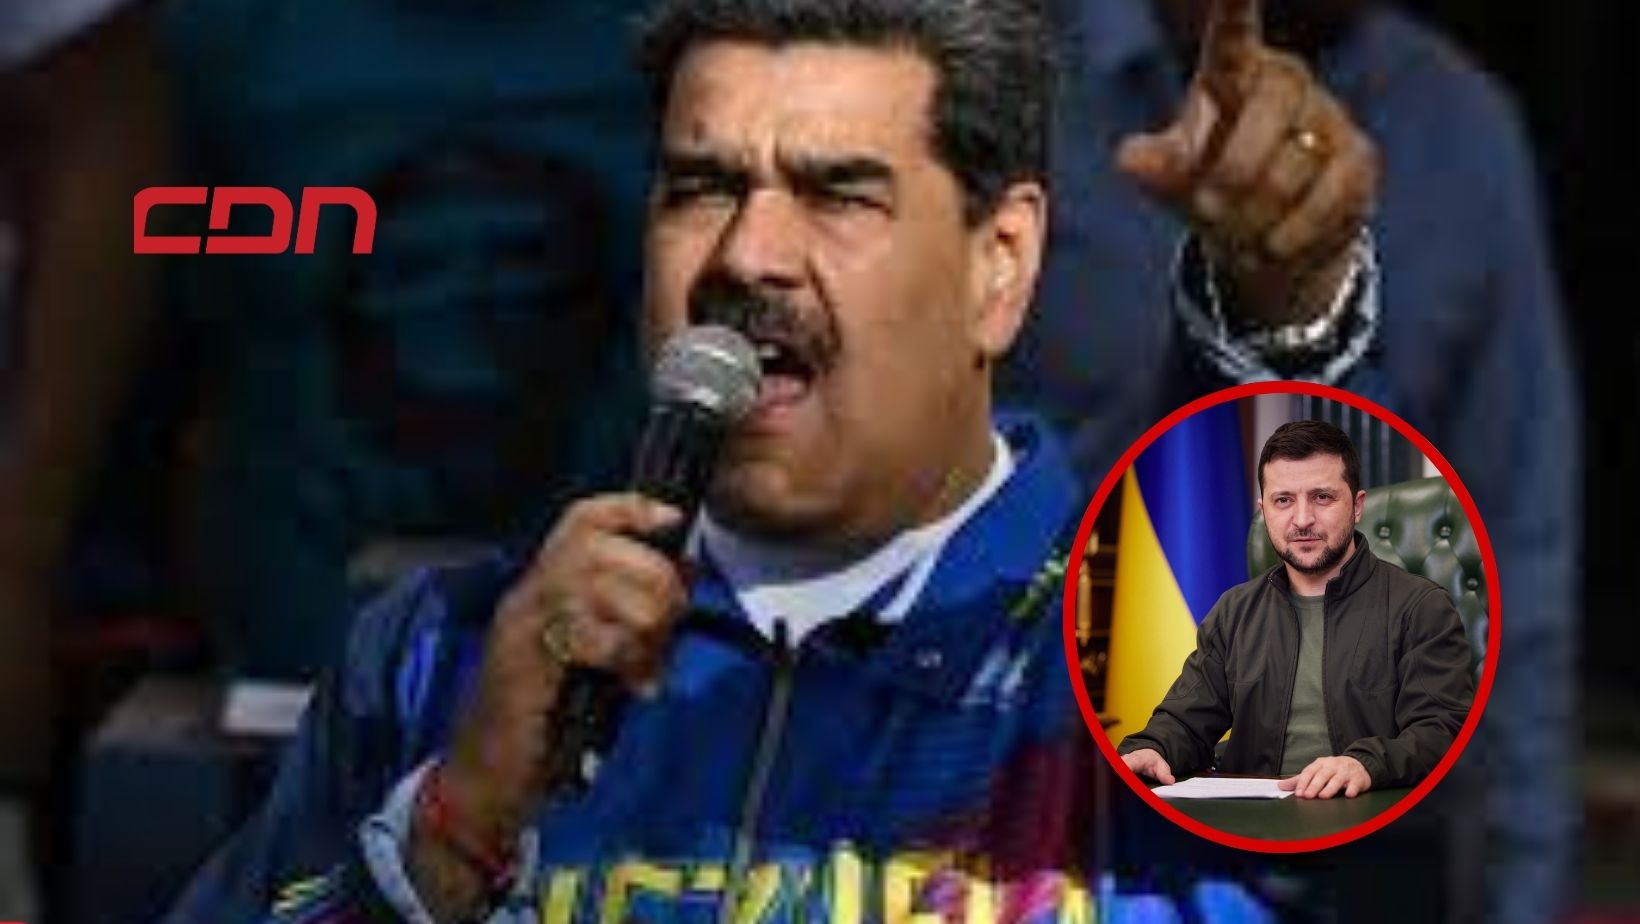 El líder venezolano señaló que todas las guerras, incluyendo el "exterminio del pueblo palestino" por parte de Israel, deben terminar. Foto: Fuente CDN Digital